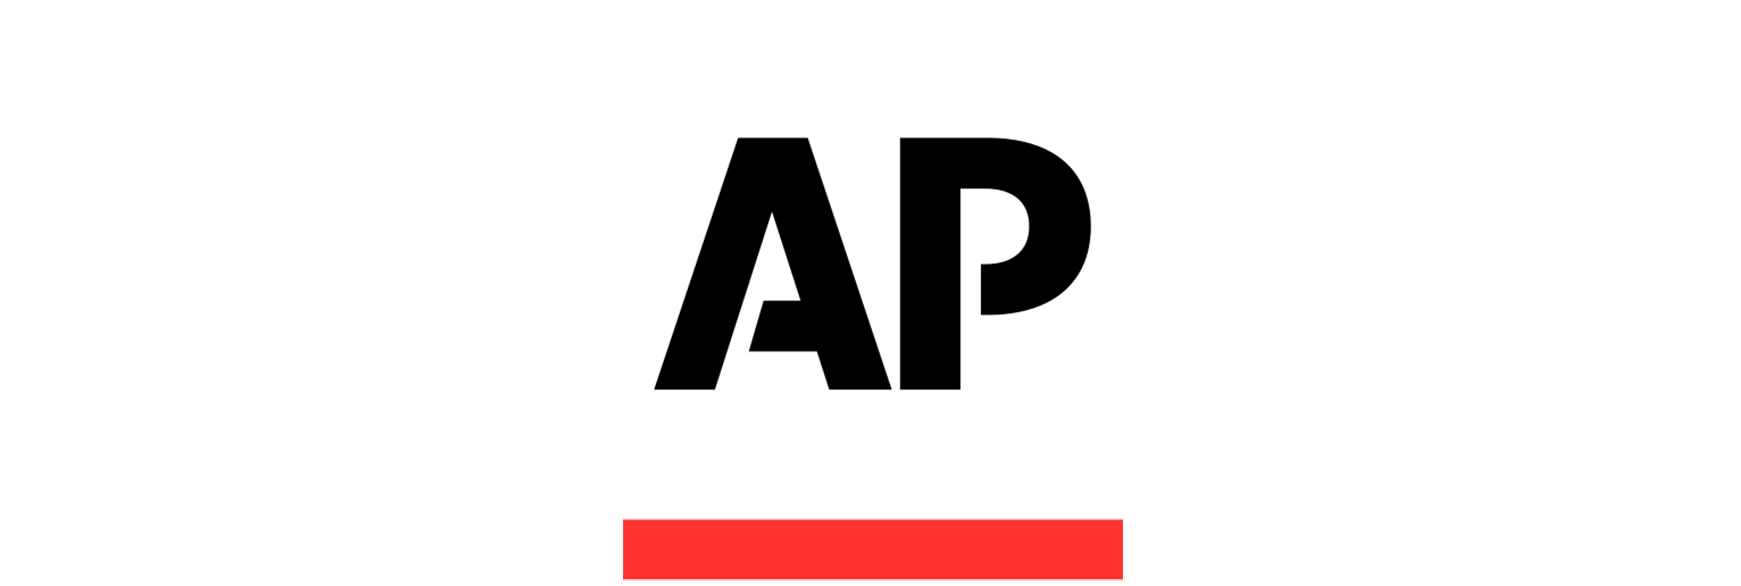 Logo AP TV